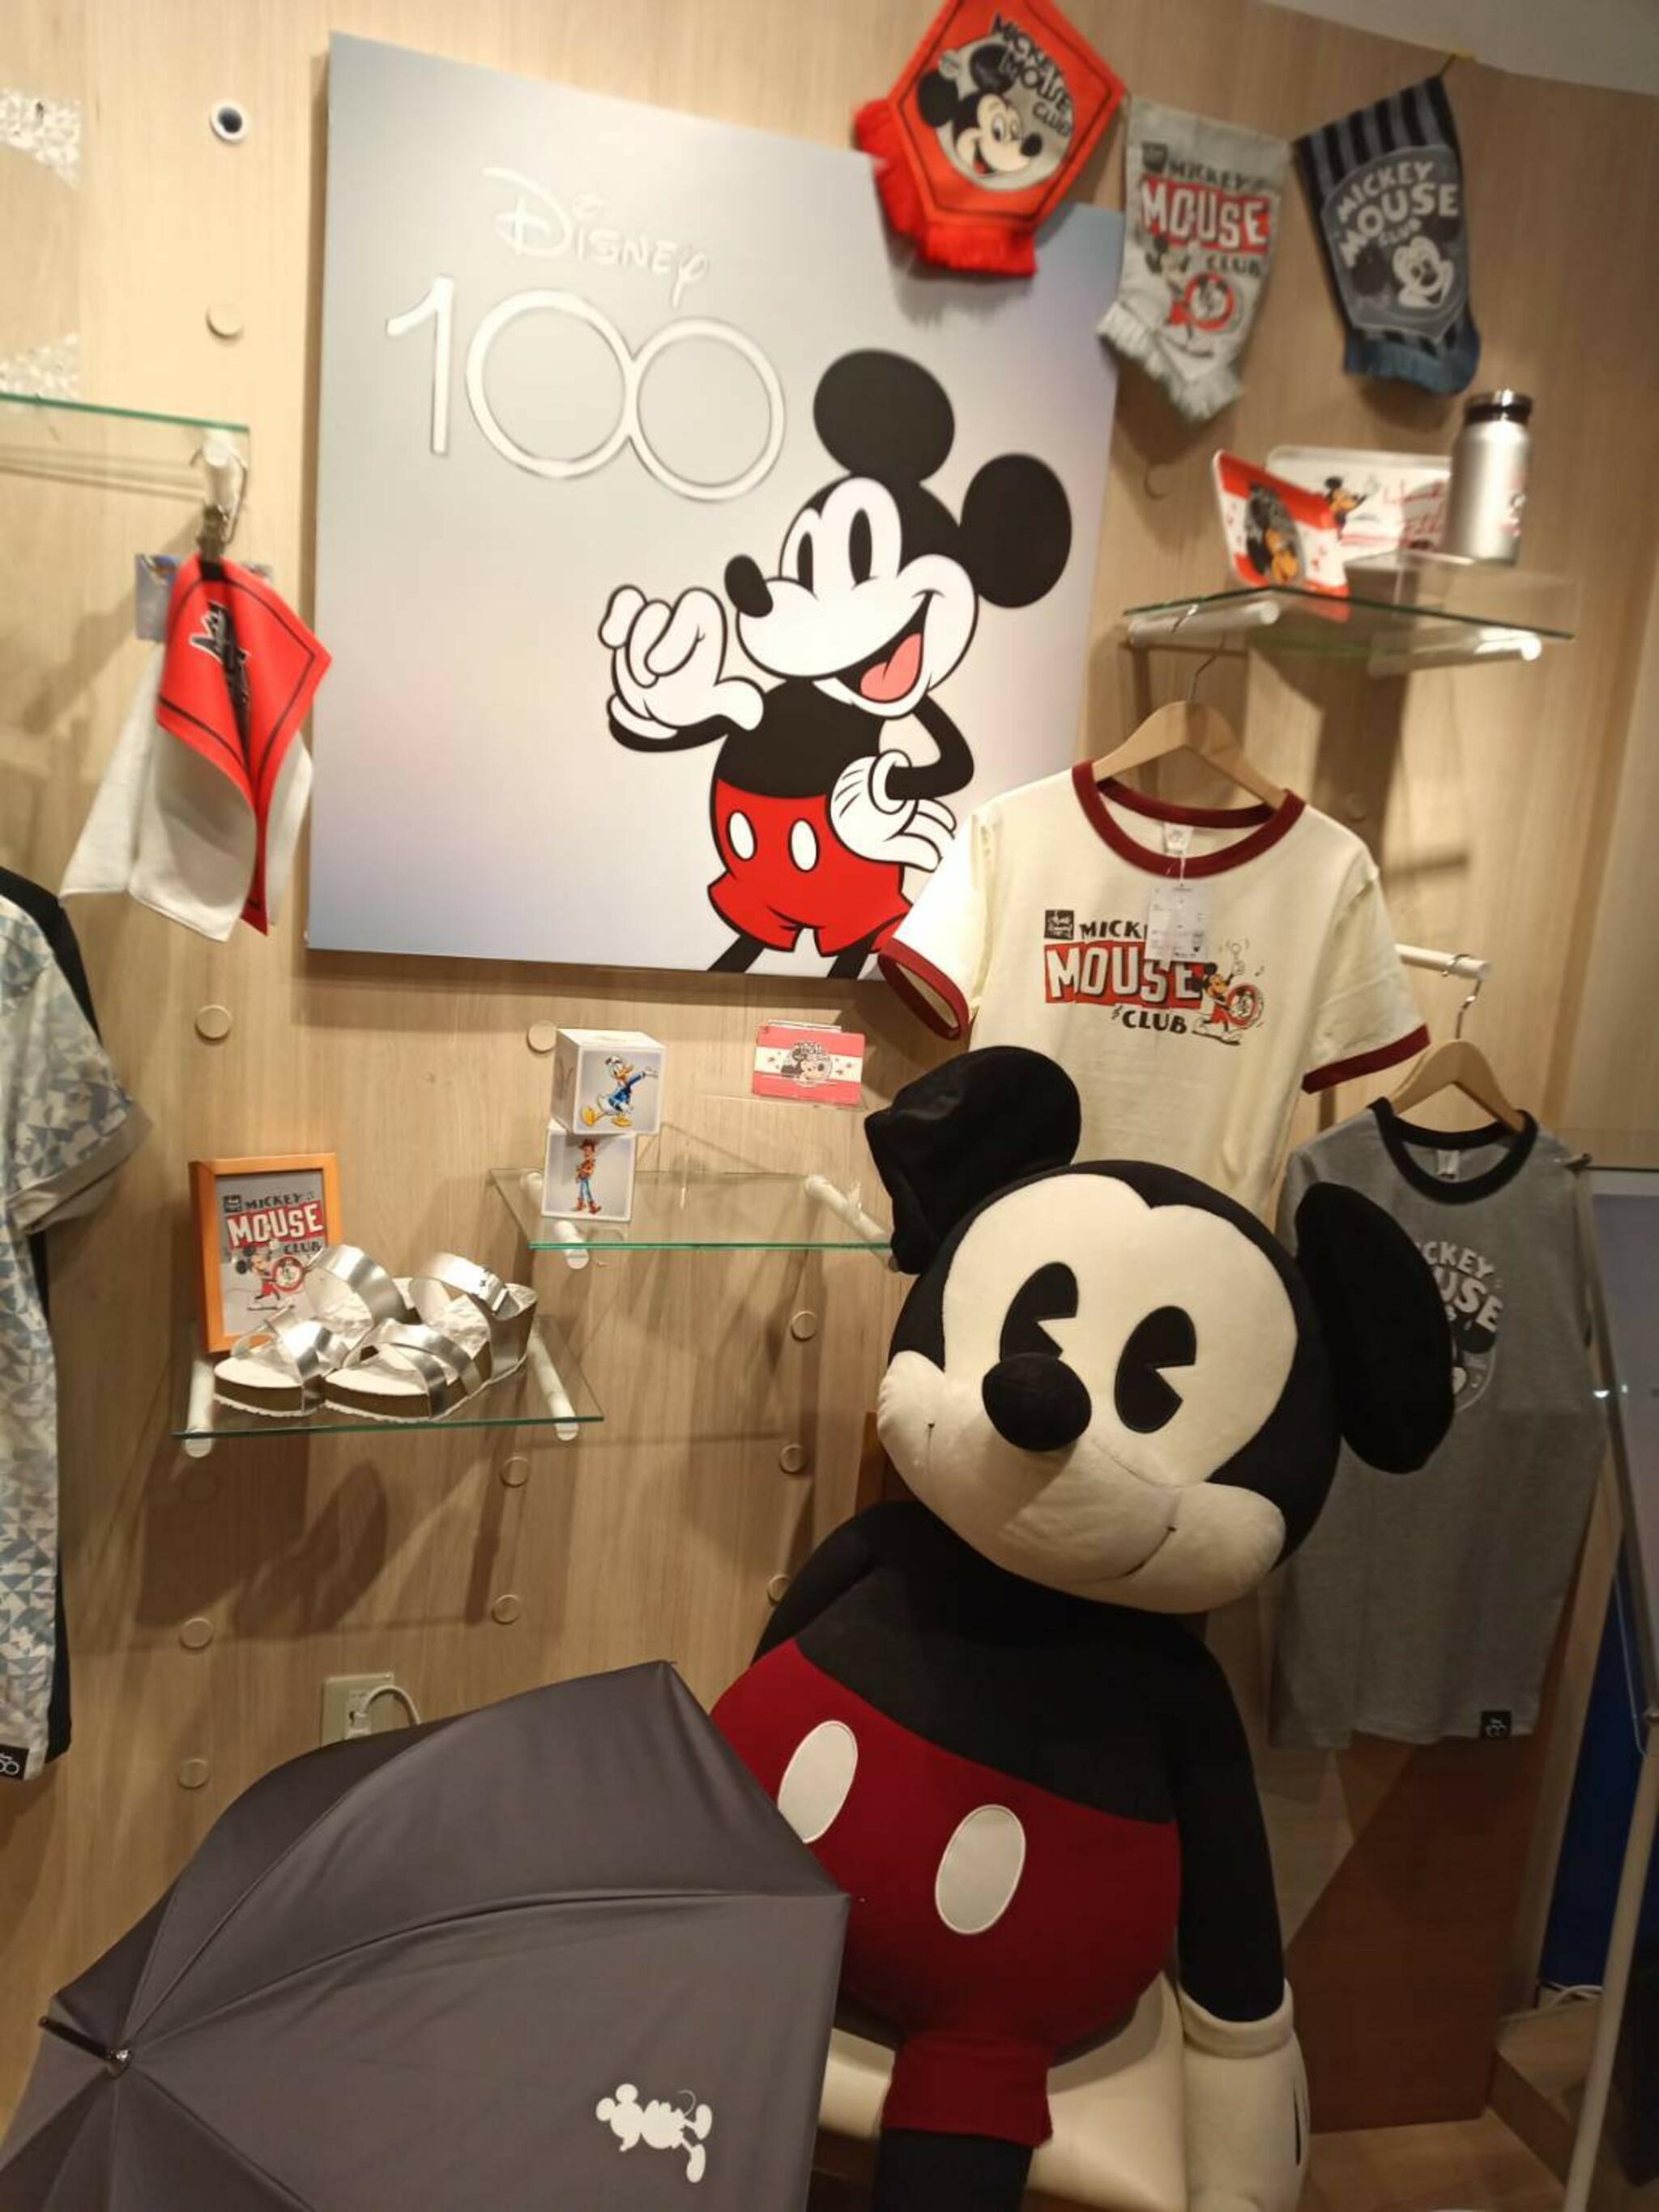 Disney Fantasy Shop by Belle Maison Opens at JR Tokyo Station